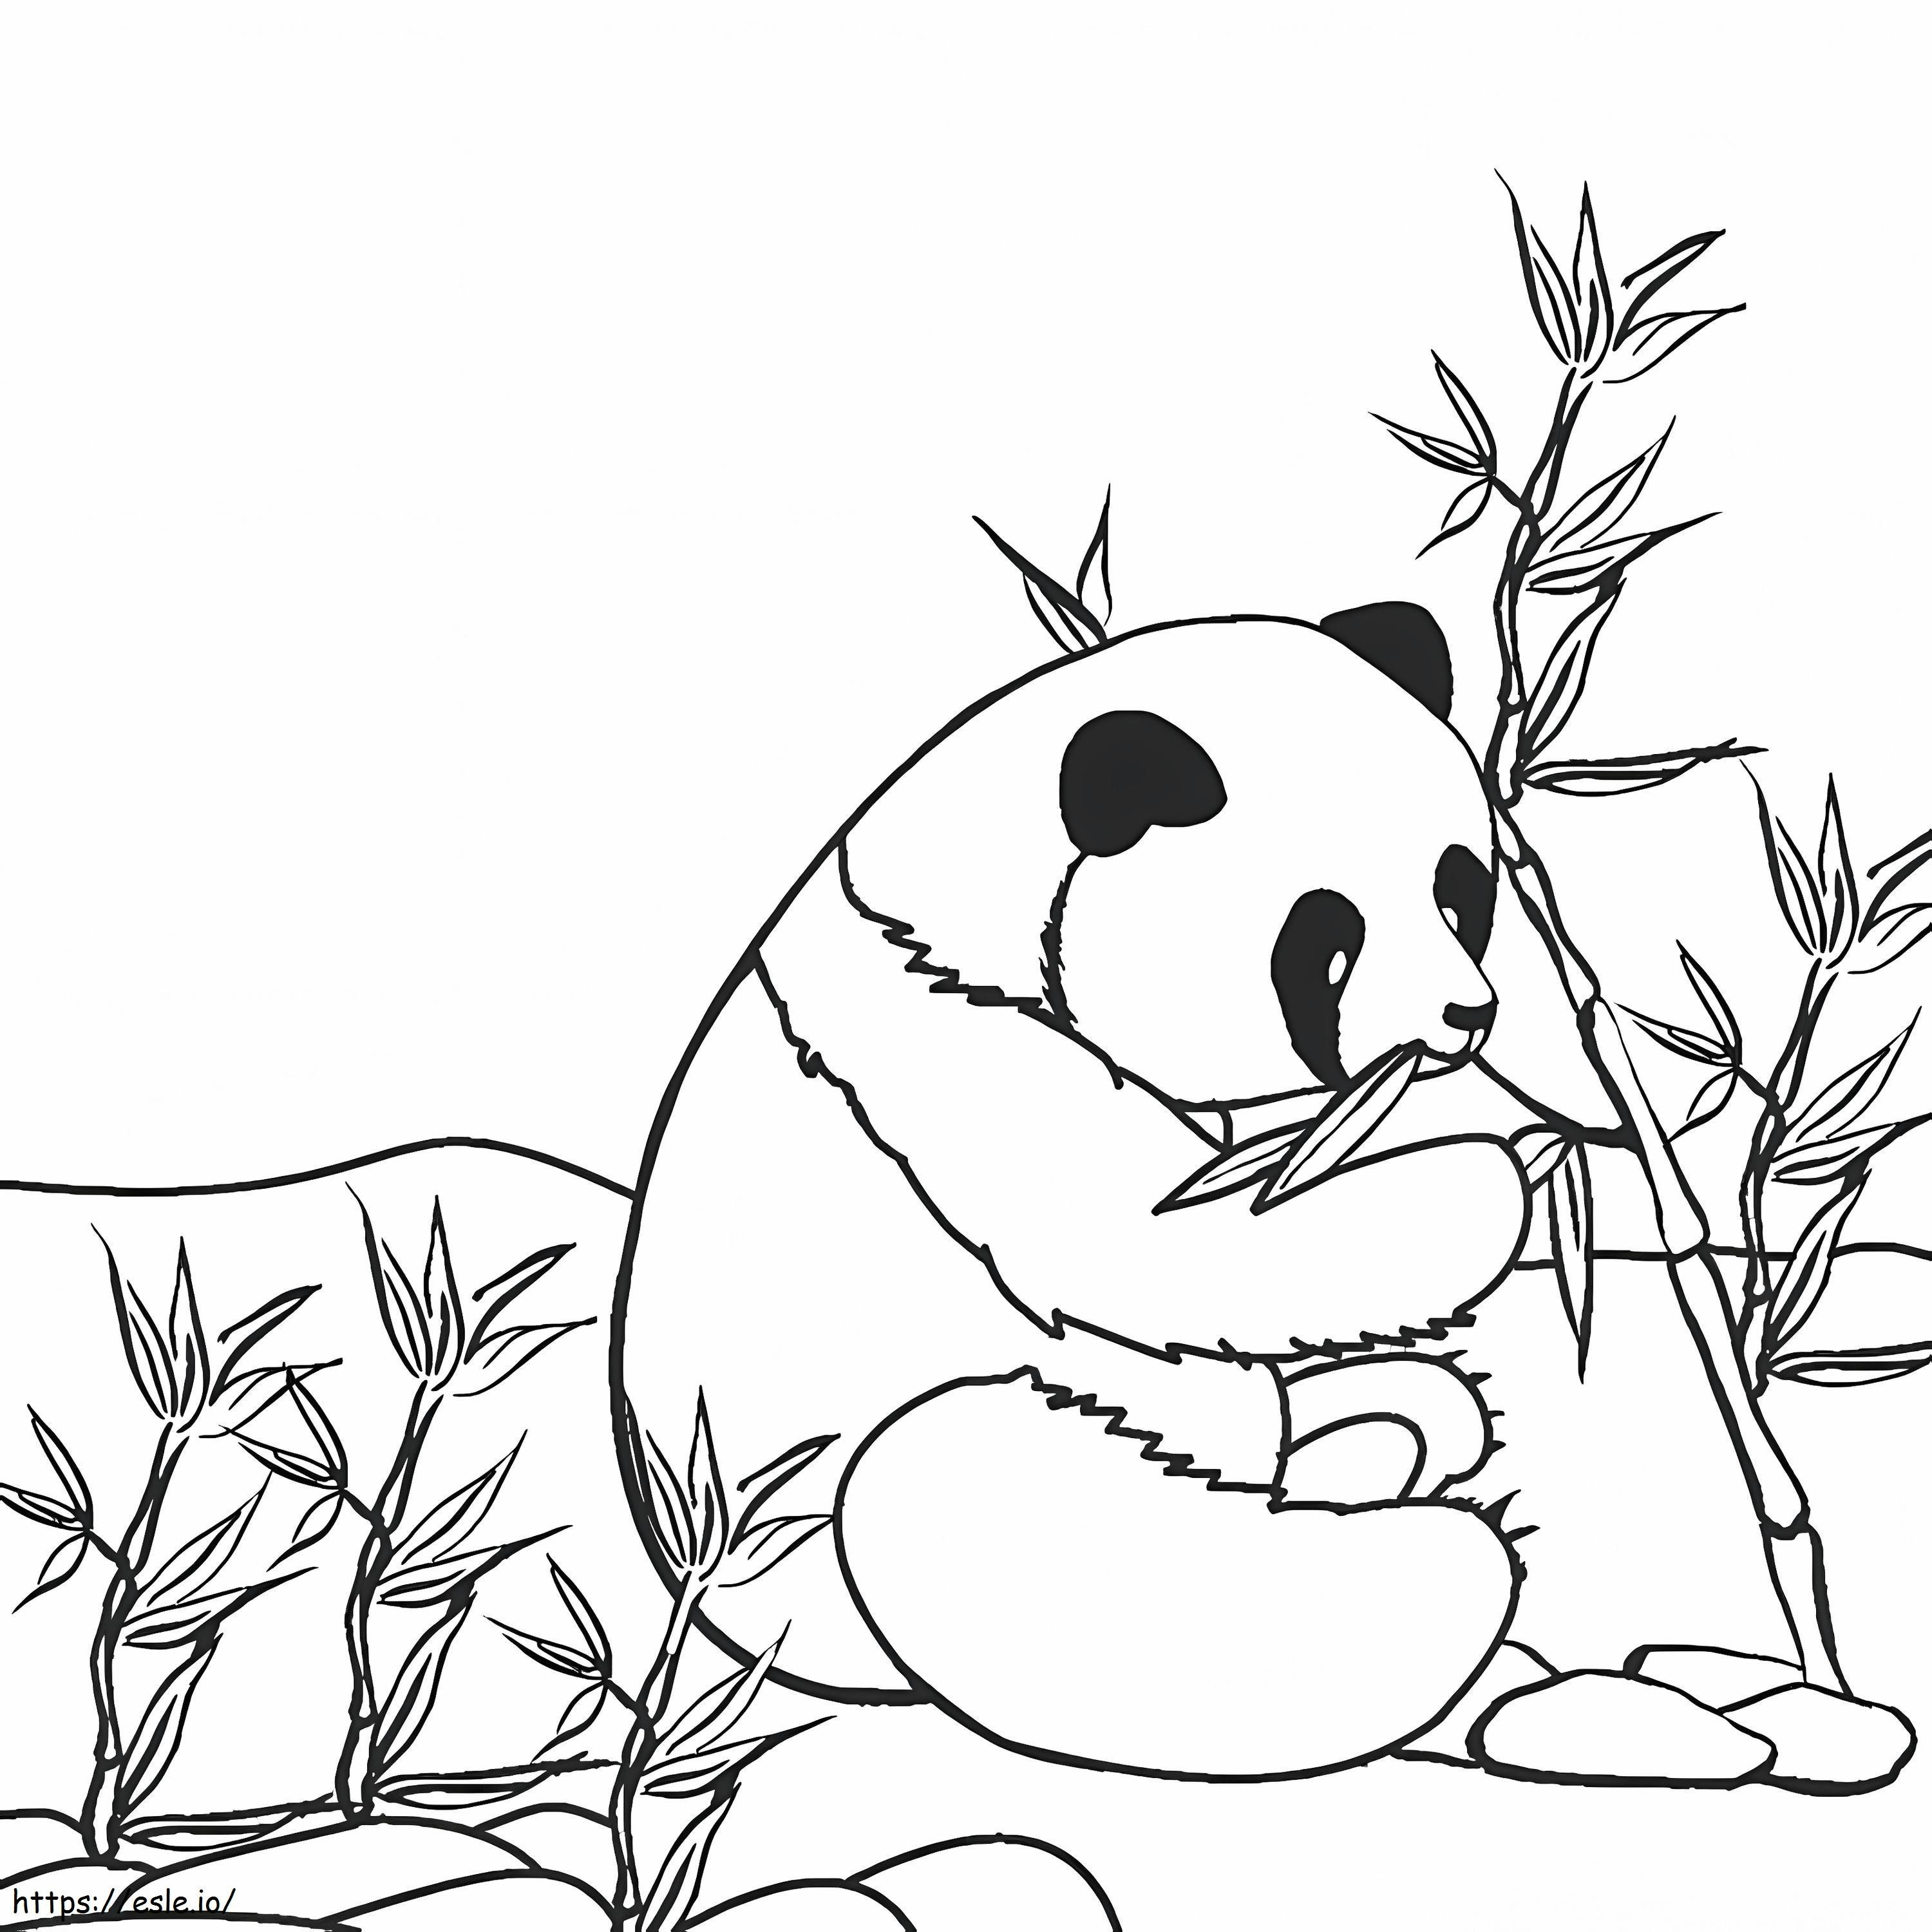 Panda 1 boyama